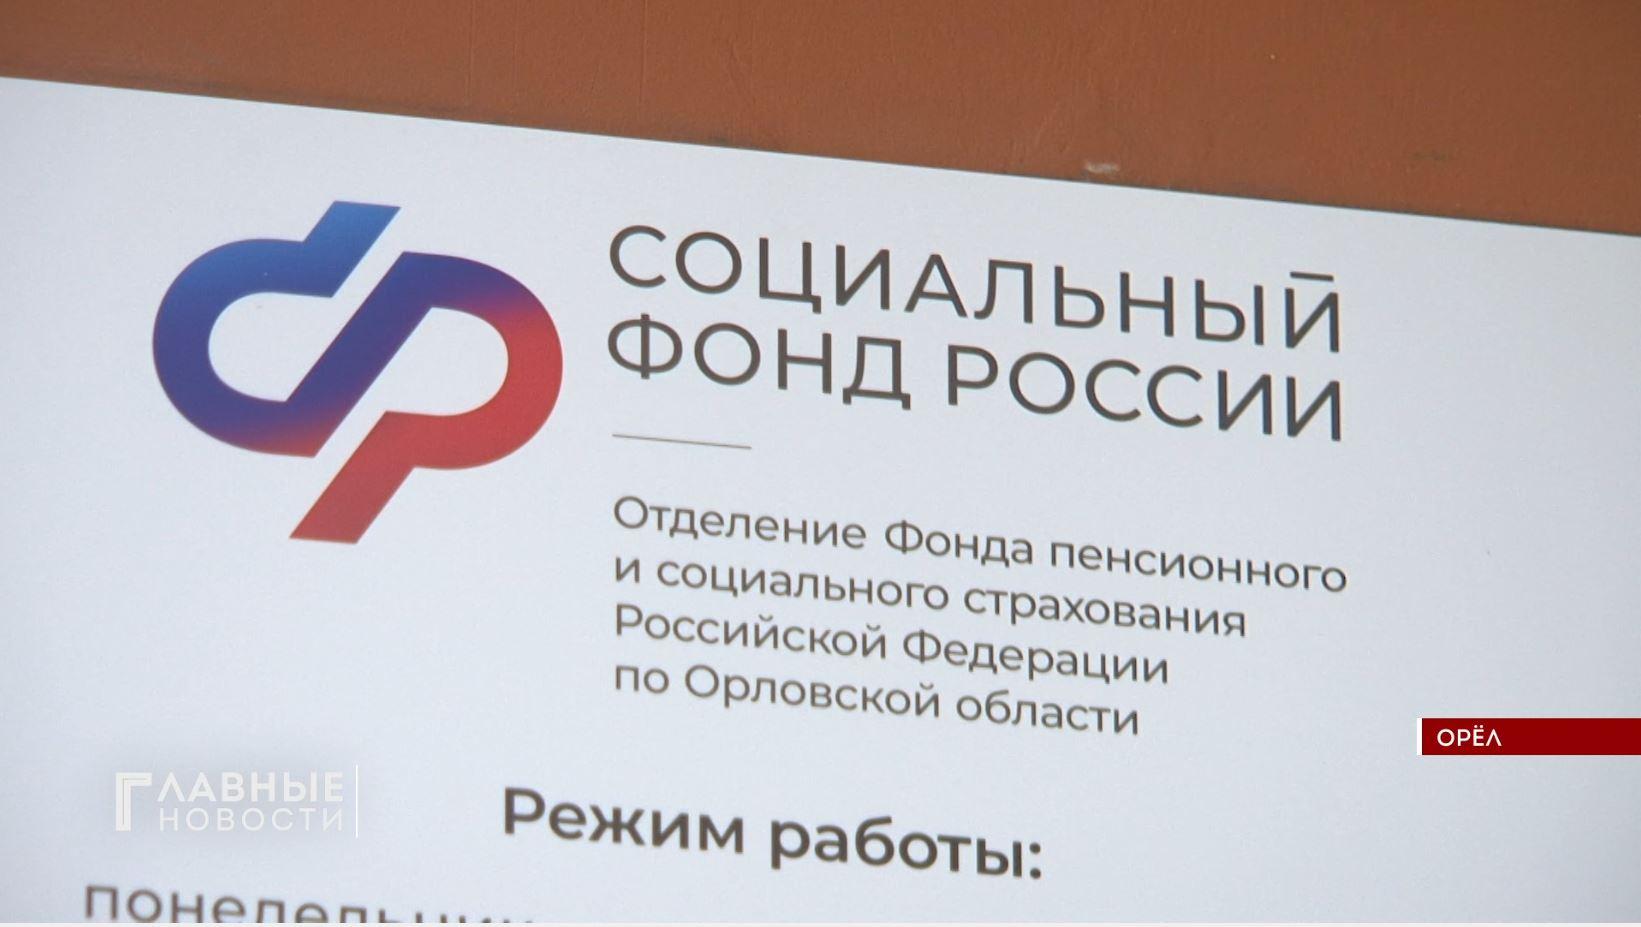 В Орловской области изменился телефон контакт-центра Соцфонда